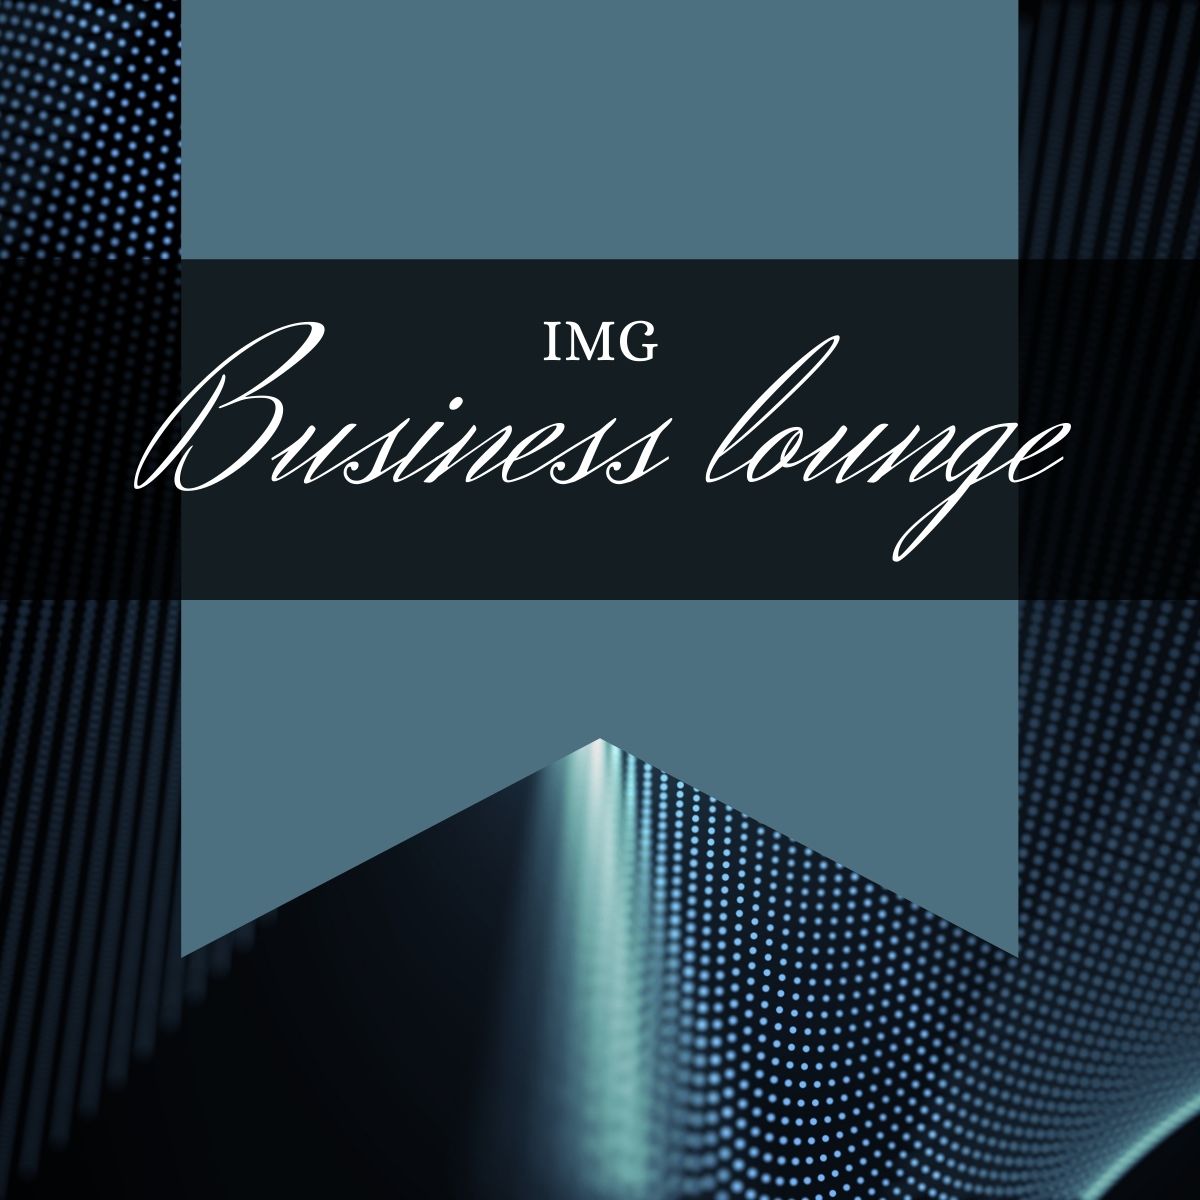 IMG lanserar businesslounge